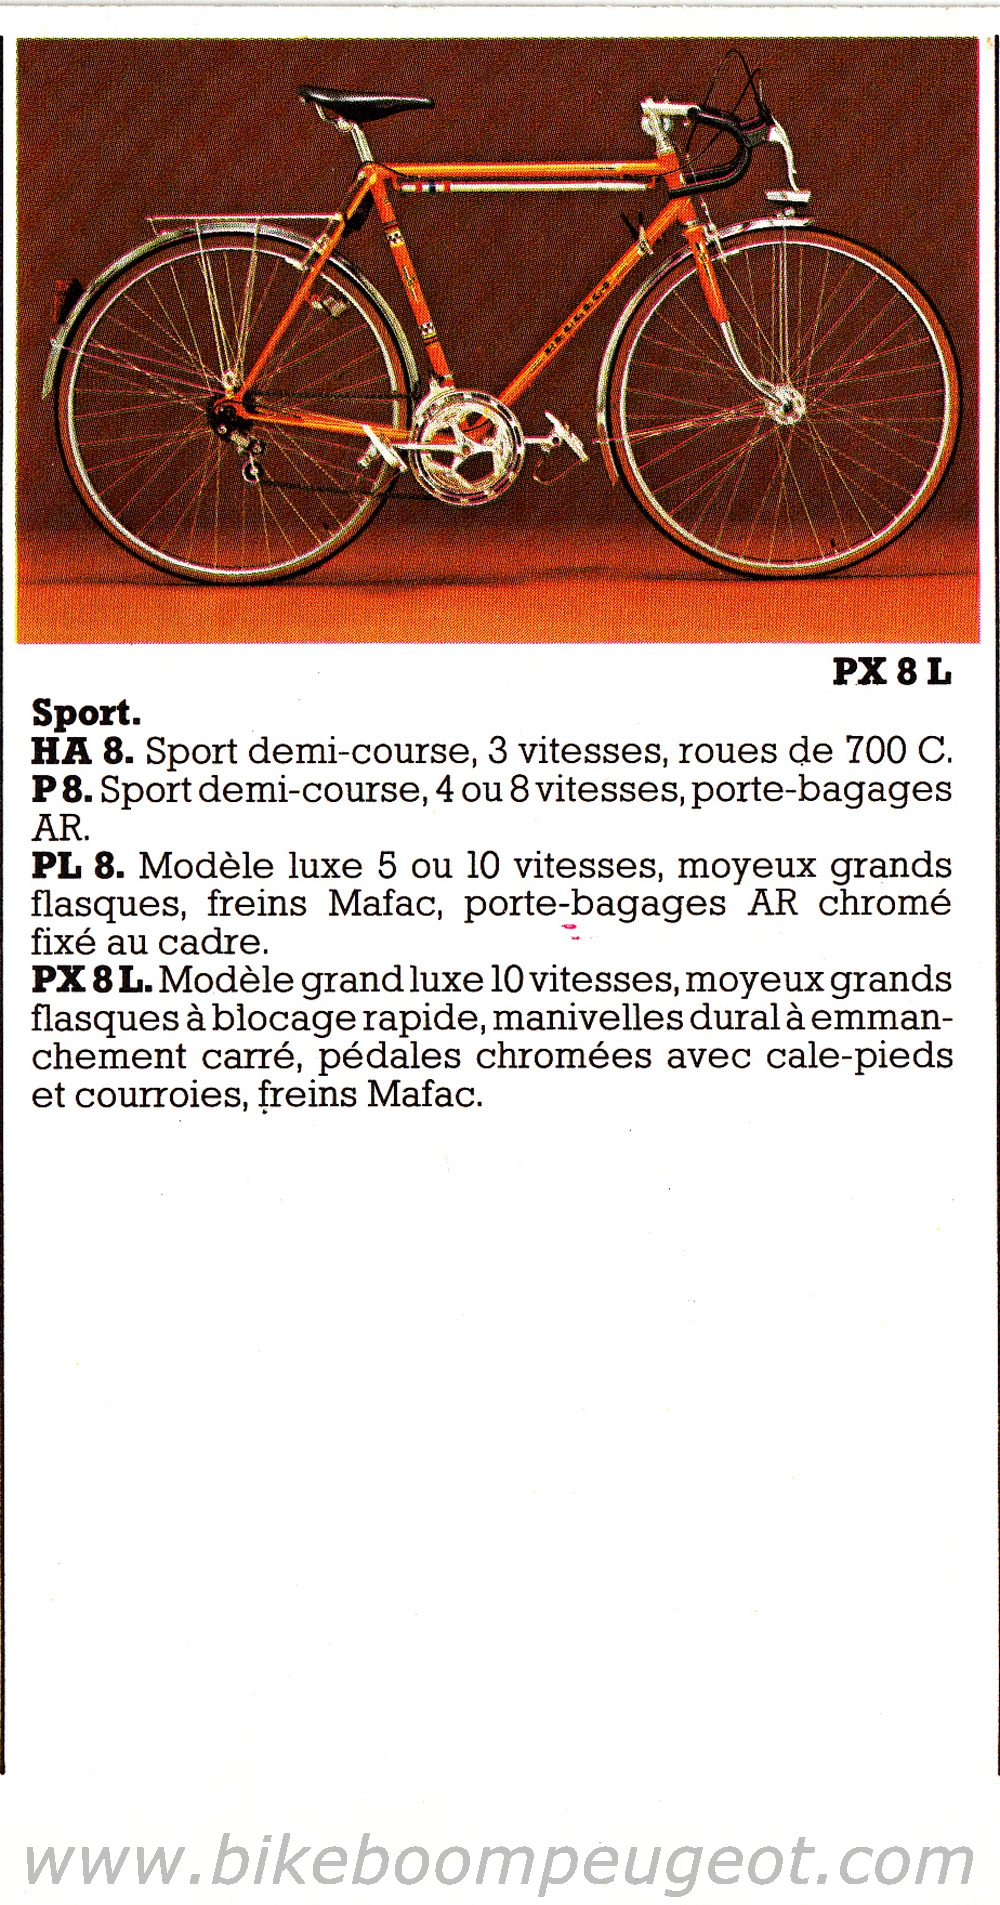 N.O.S plaque velo PEUGEOT 1977 bici bke vintage 